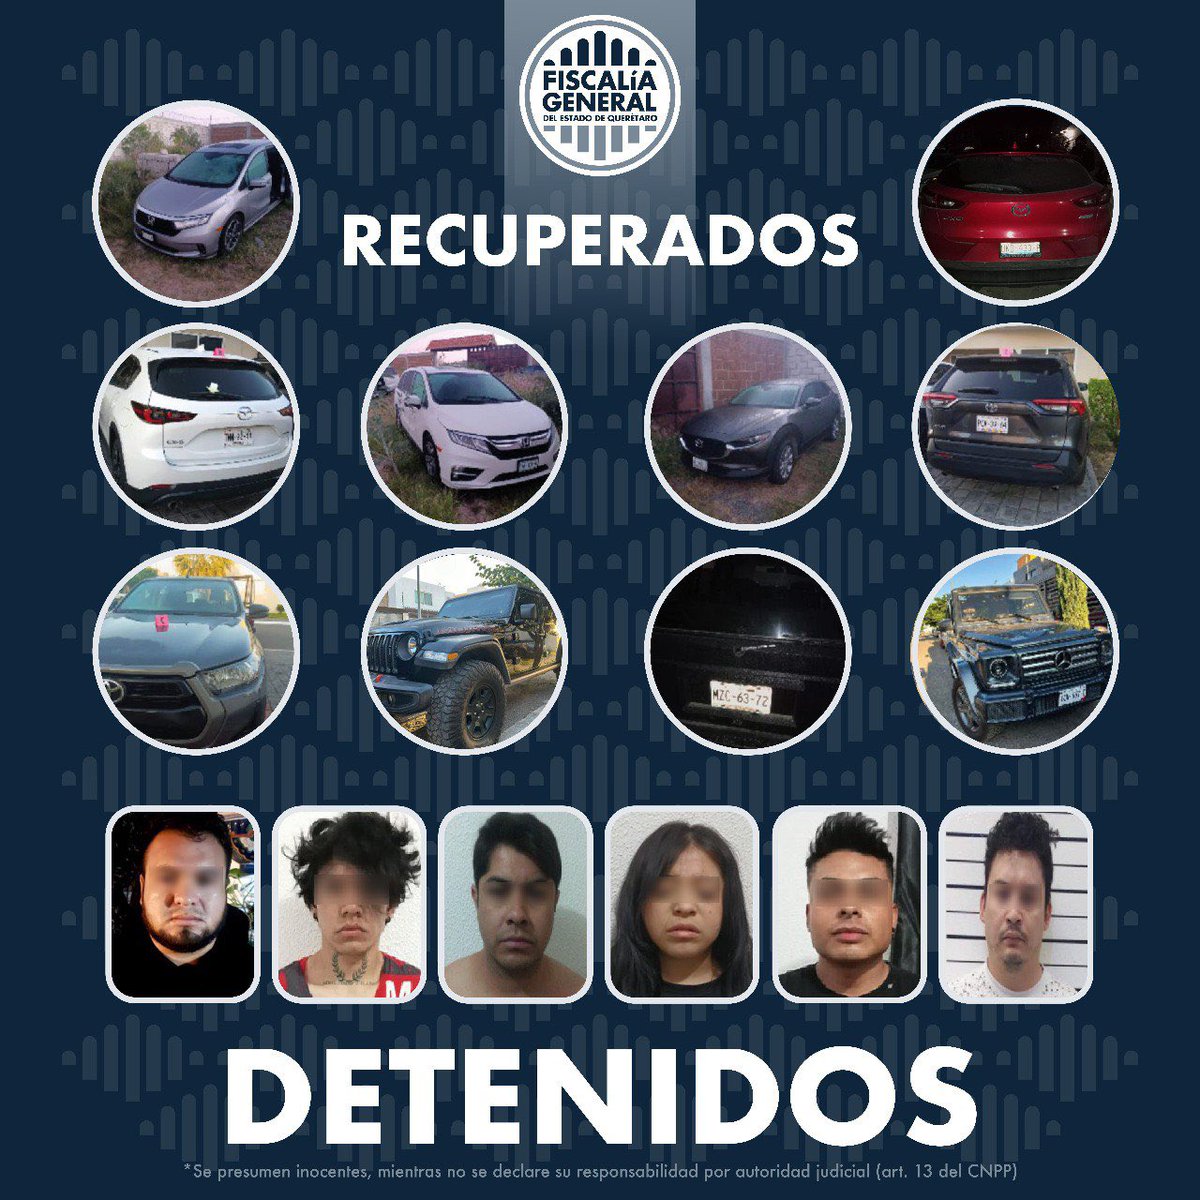 #PorTuSeguridad | Se realizaron 7 cateos a inmuebles en los municipios de Querétaro y Corregidora, además, la #FiscalíaQro recuperó 10 vehículos con reporte de robo y detuvo a 6 personas, desarticulando una banda dedicada a la comercialización de autos de alta gama.

Ver más: